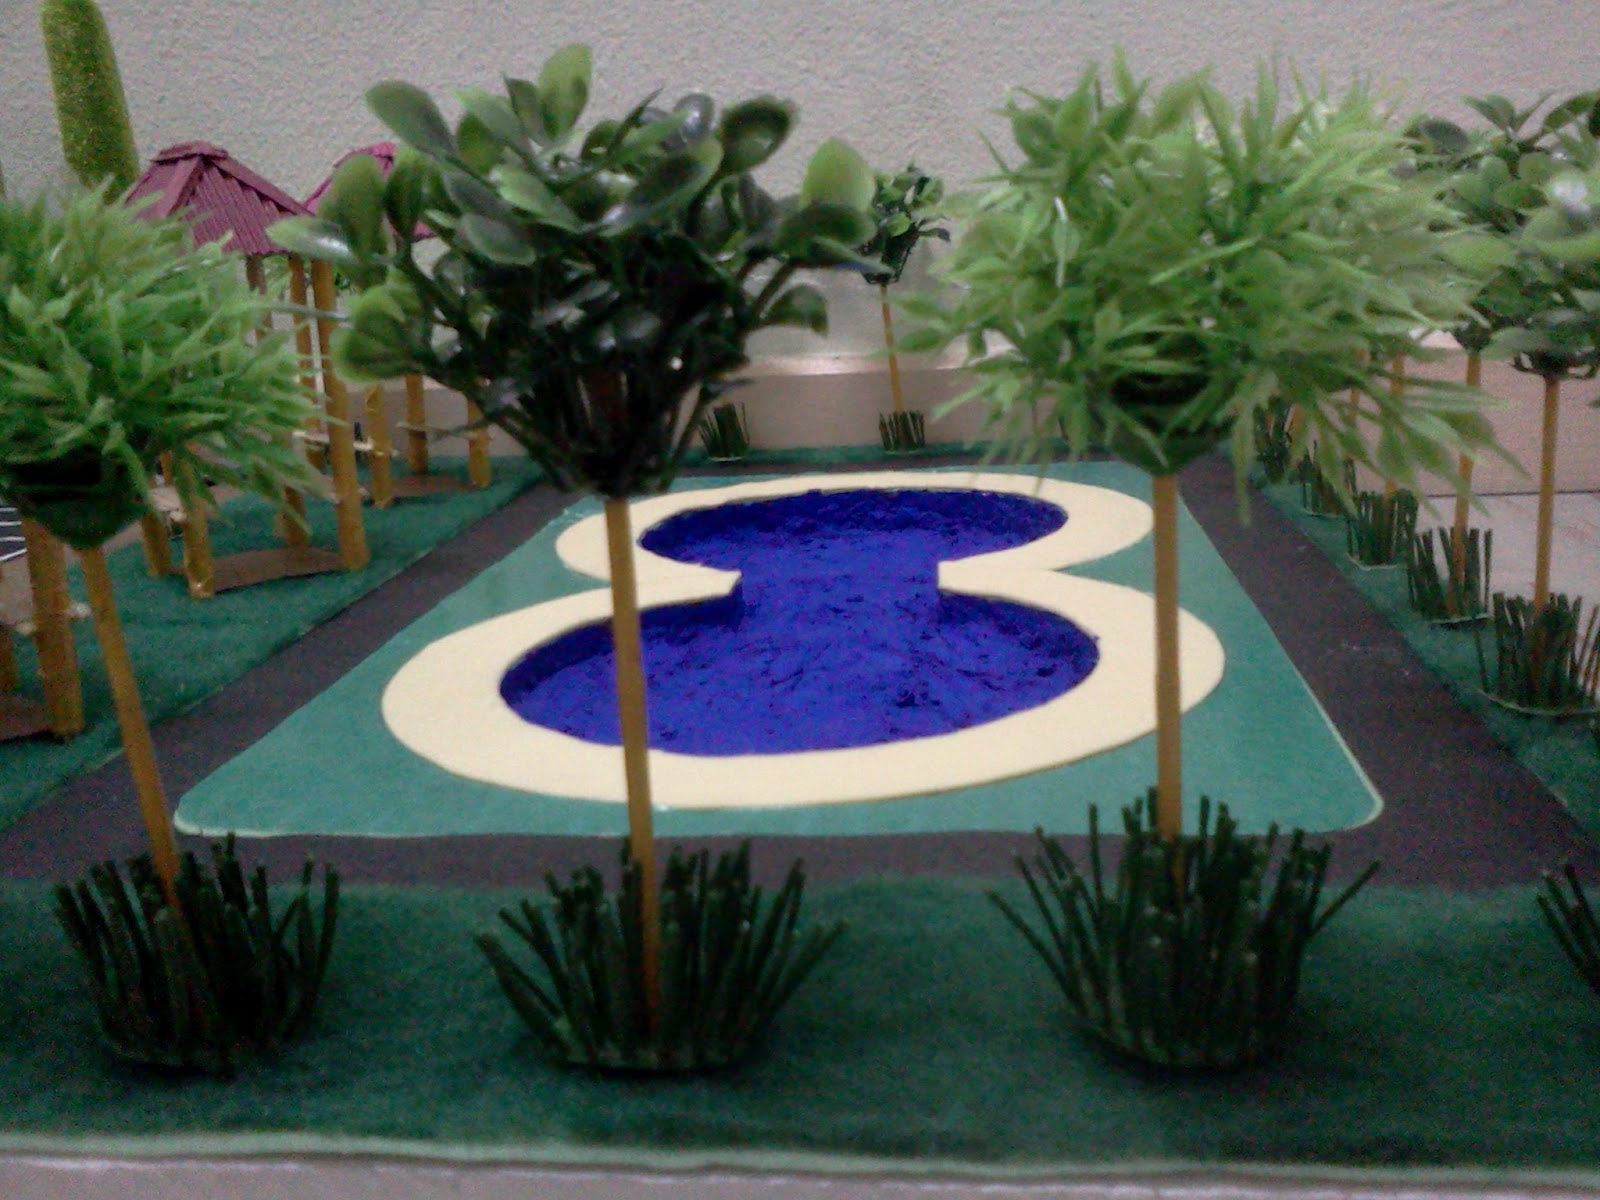 Bingung ka?: How to make landscape model (Model landskap)